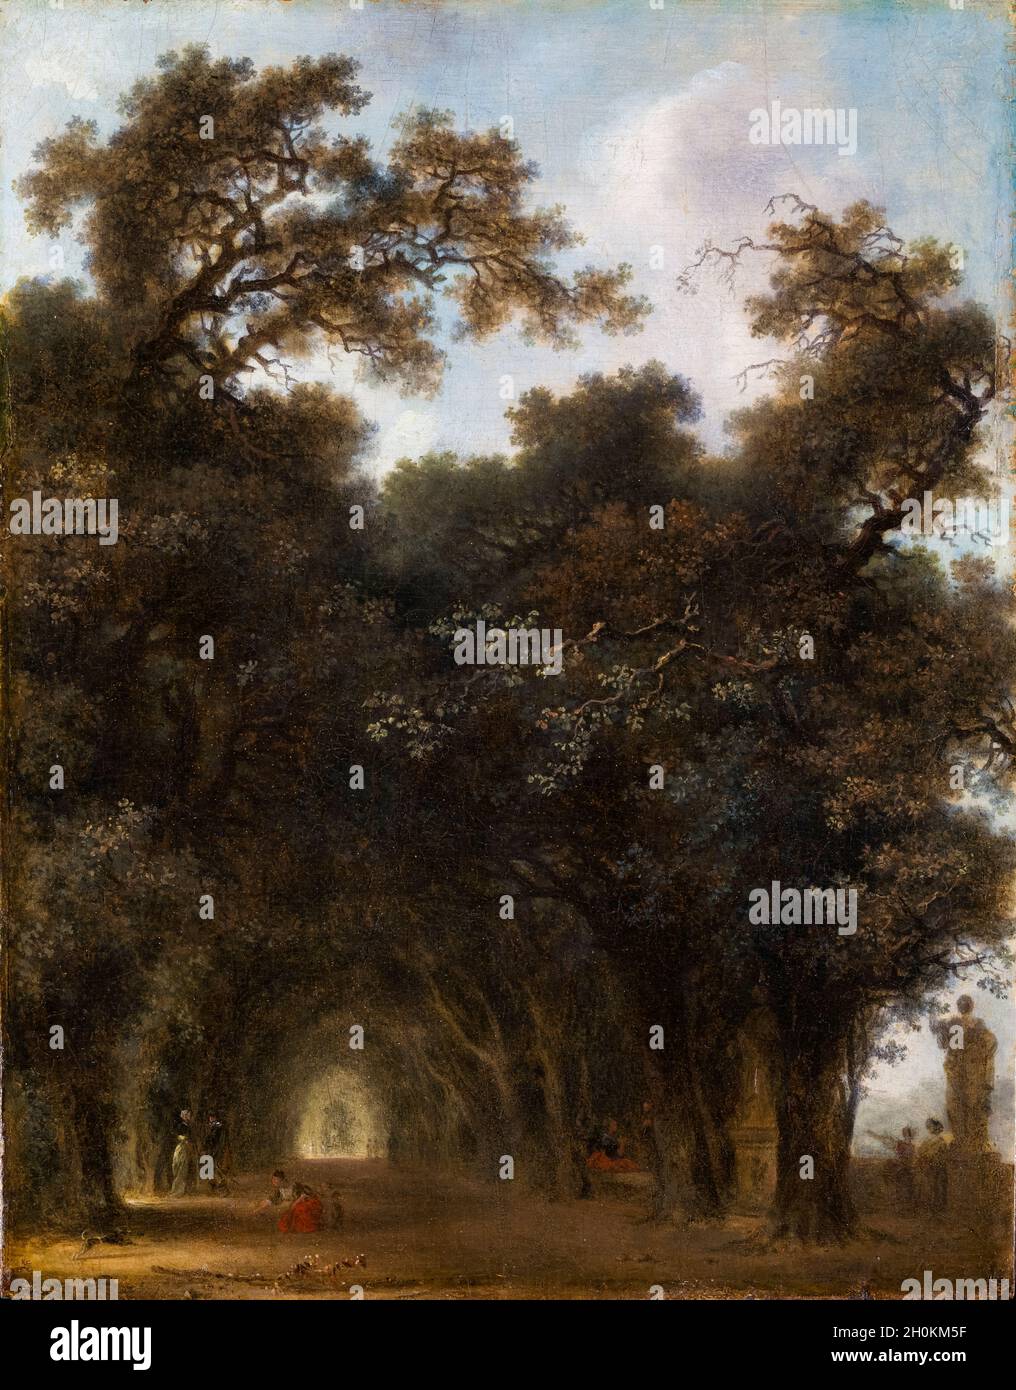 Jean Honoré Fragonard, Une avenue ombragée, peinture de paysage, vers 1775 Banque D'Images